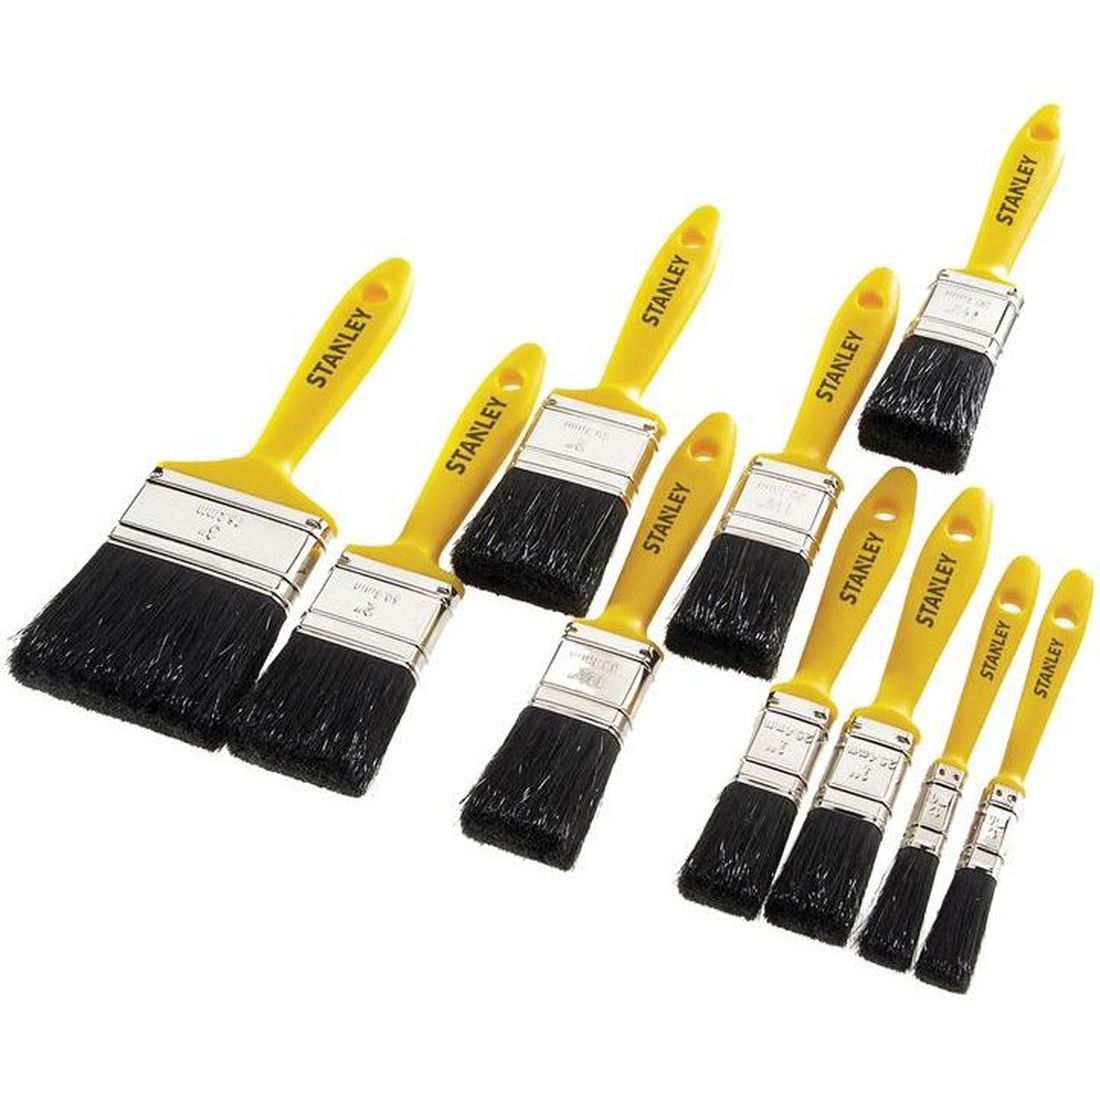 STANLEY Hobby Paint Brush Set of 10 12(2) 25(2) 38(3) 50(2) & 75mm                      